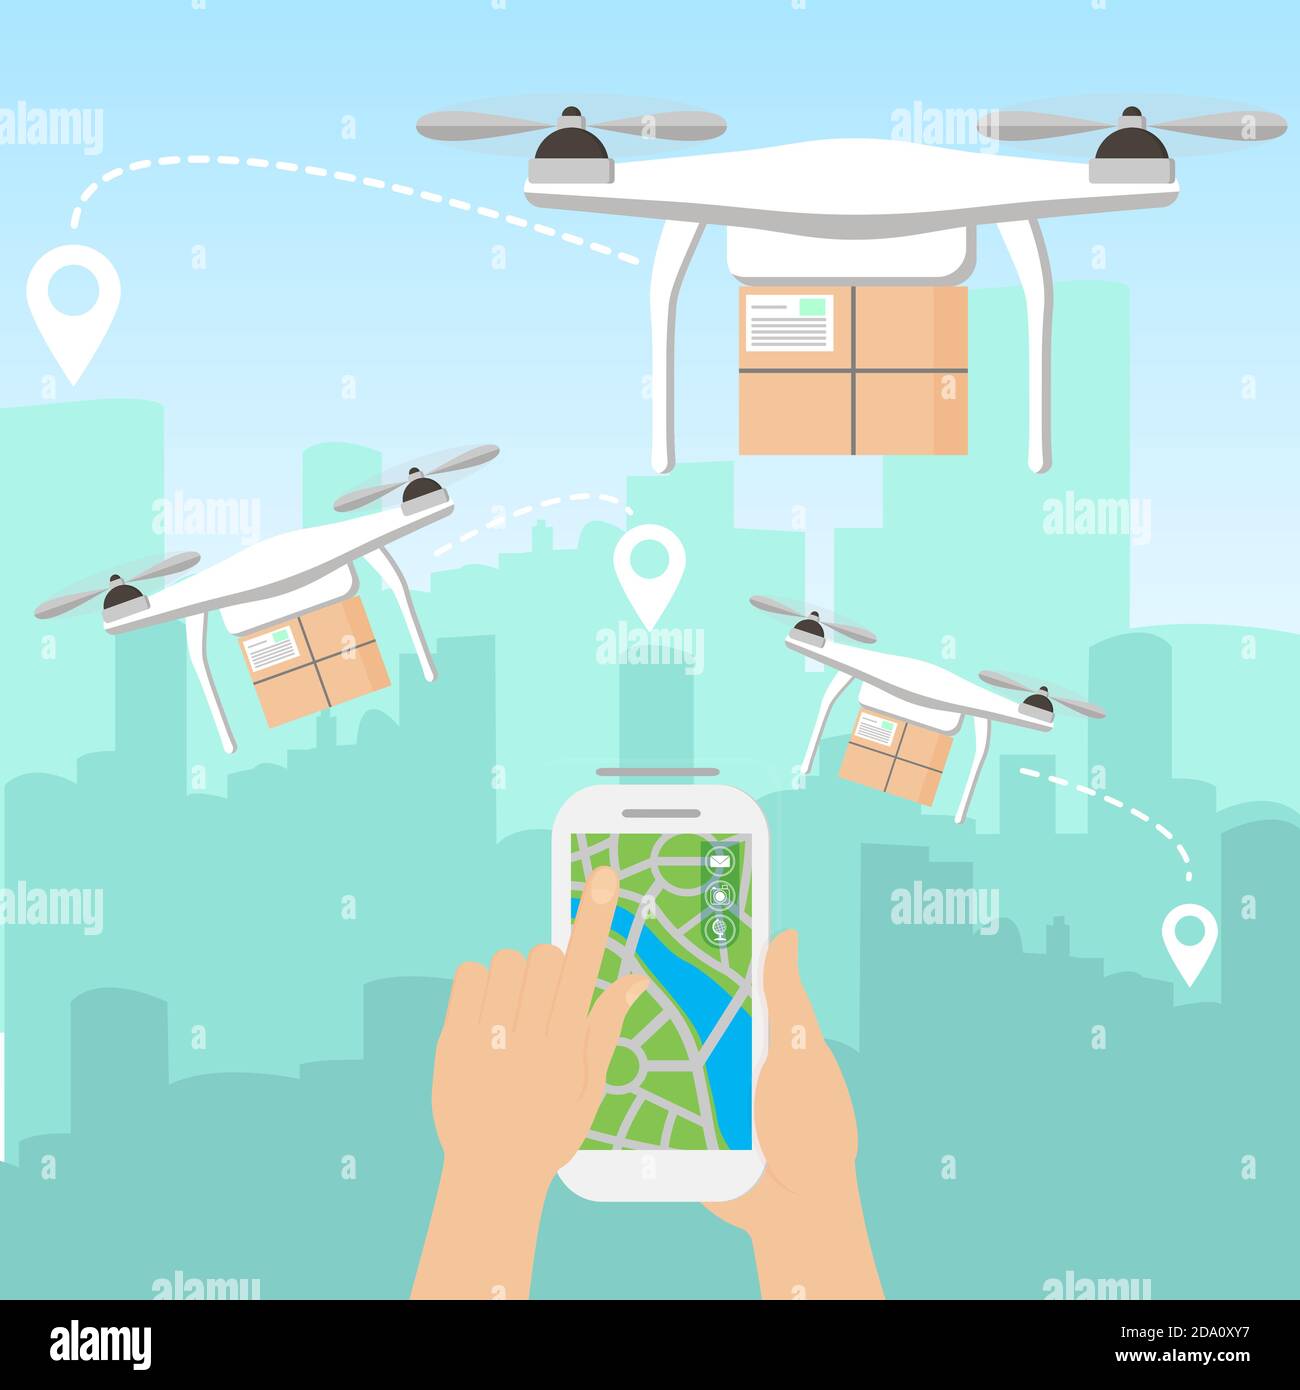 Illustrazione vettoriale delle mani che lanciano pochi droni di consegna con i pacchetti con smartphone di fronte allo skyline di un grande città moderna con grattacieli Illustrazione Vettoriale